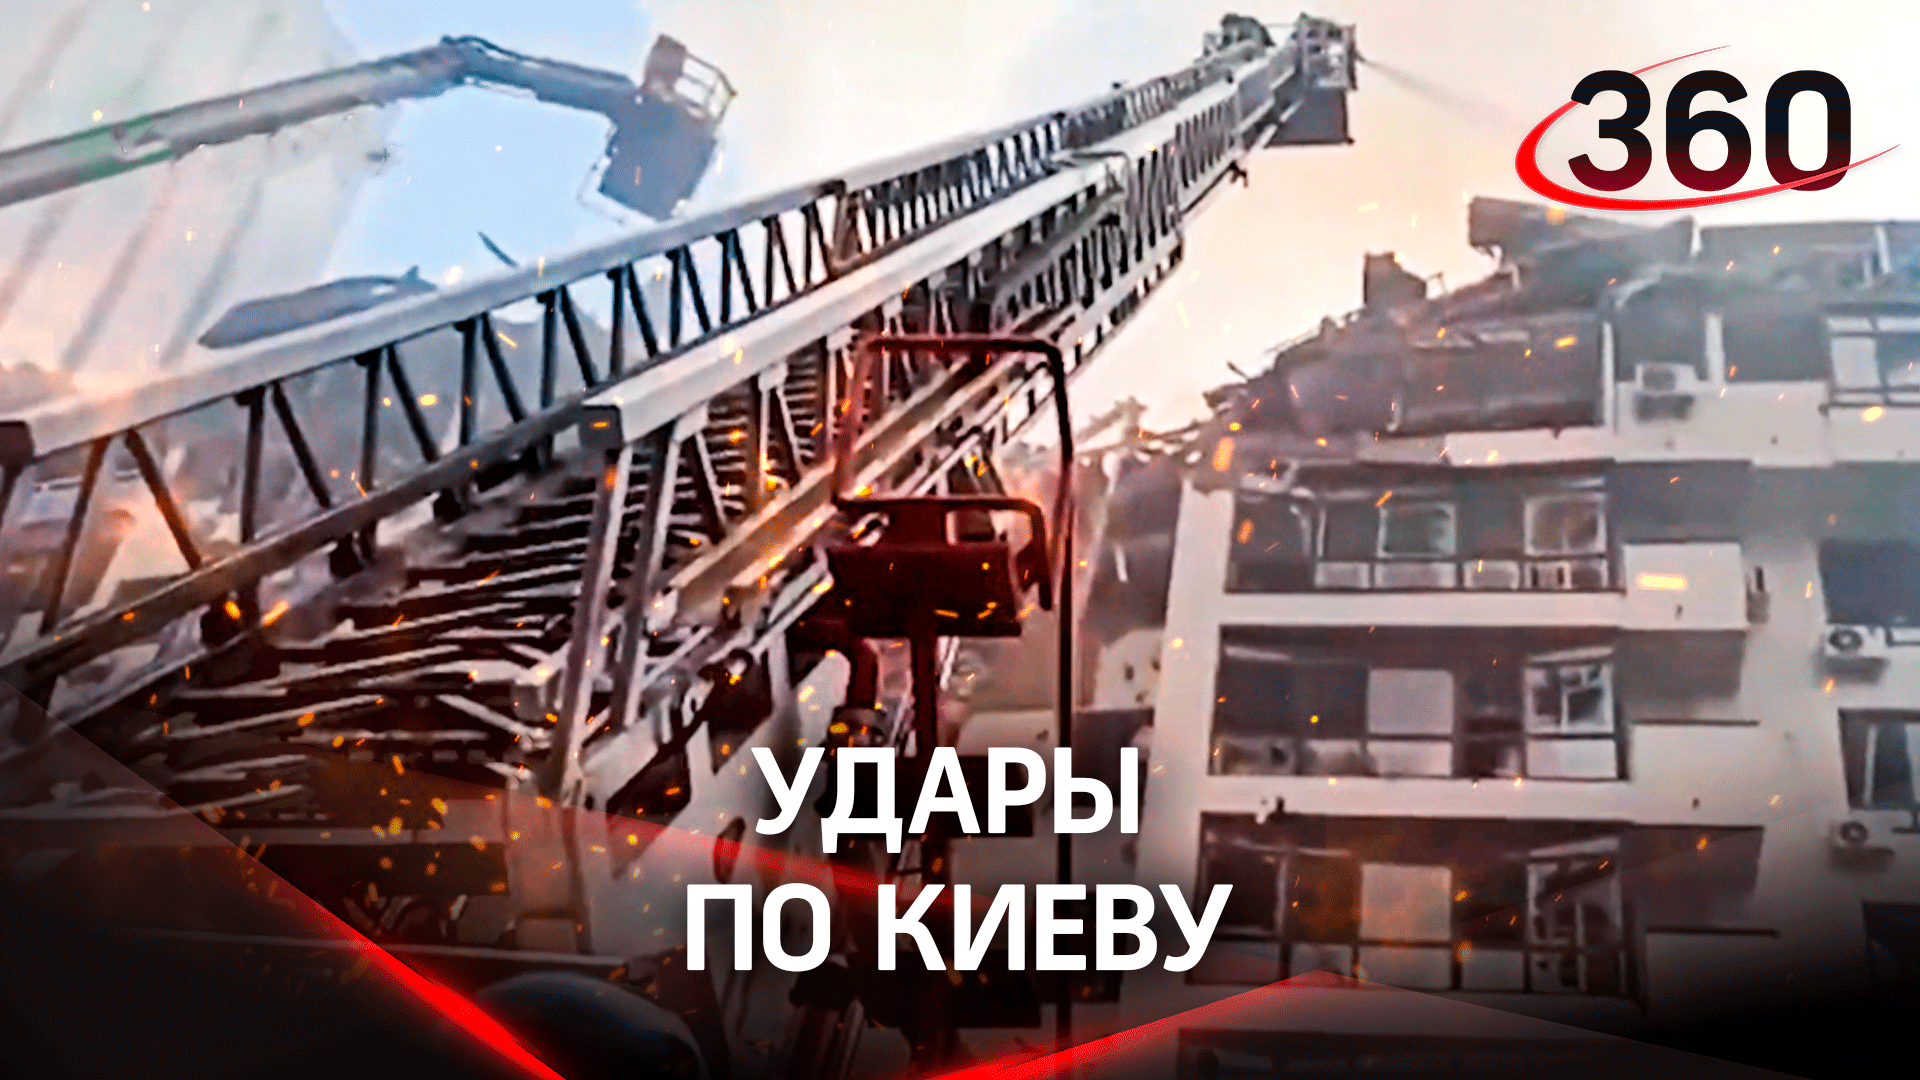 Ракетные удары по Киеву: снаряд попал в жилую многоэтажку